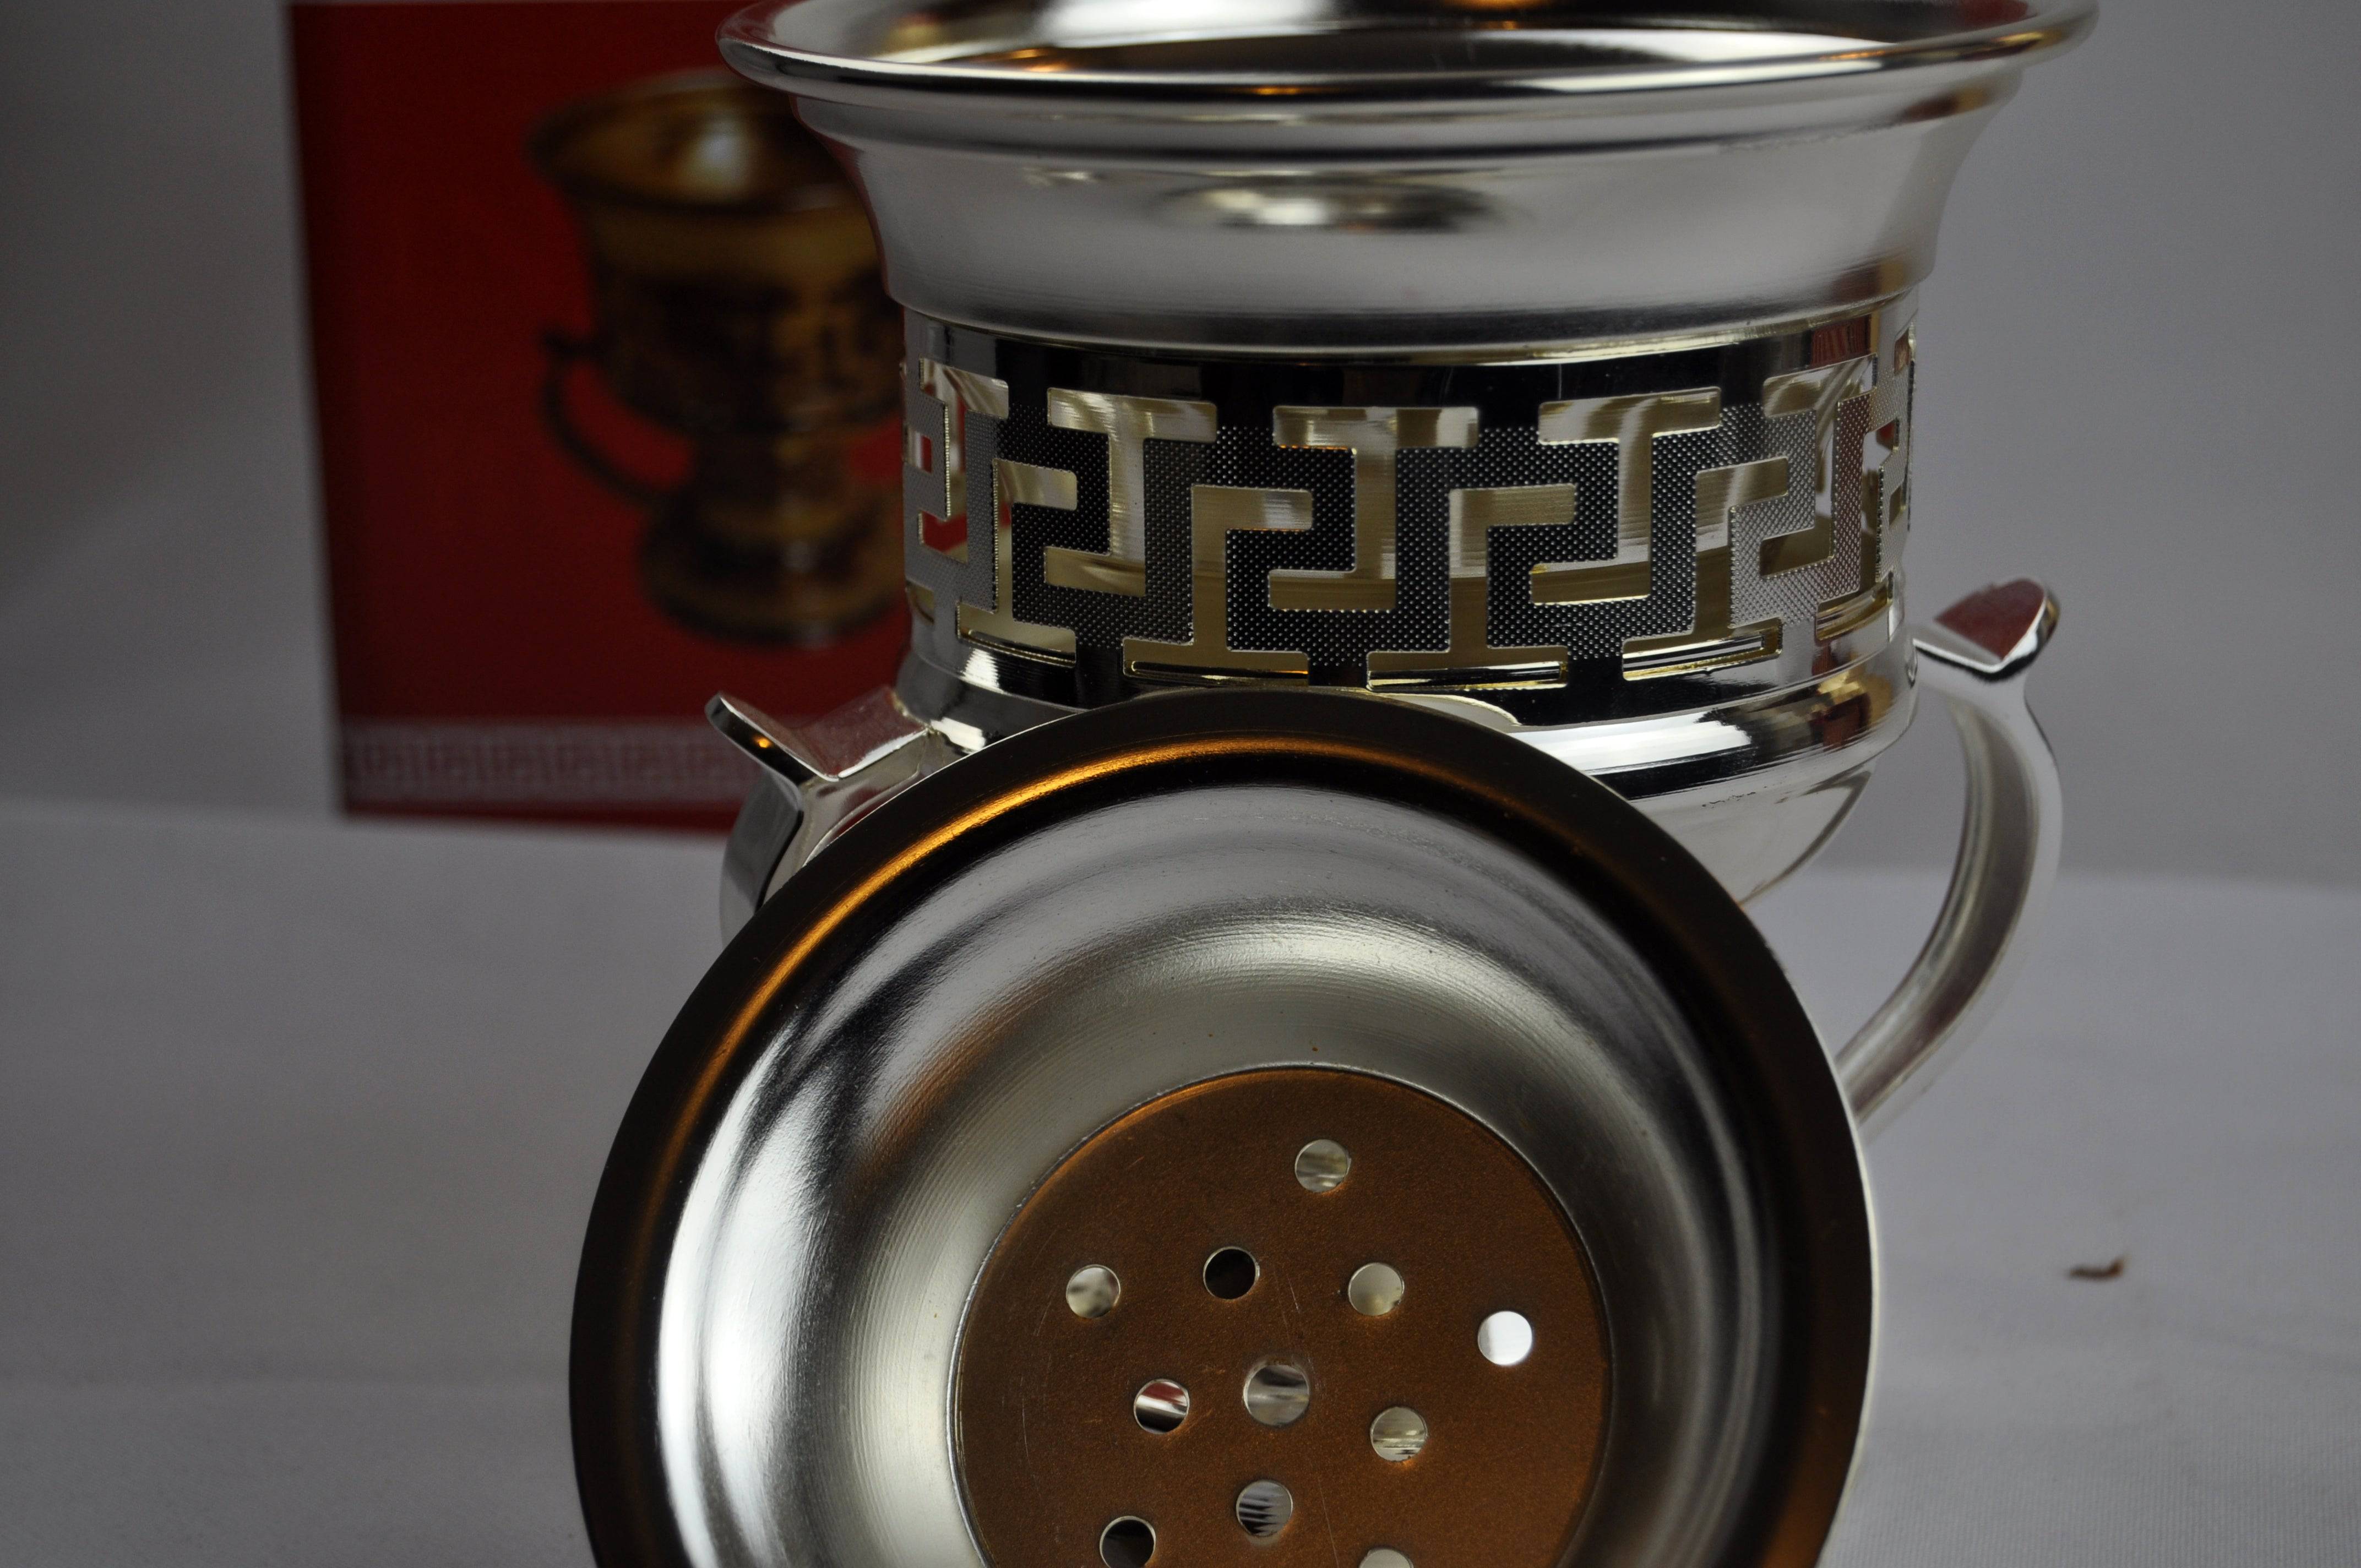 Arab Incense Bakhoor Burner - 6 inch Silver by Intense Oud - Intense oud